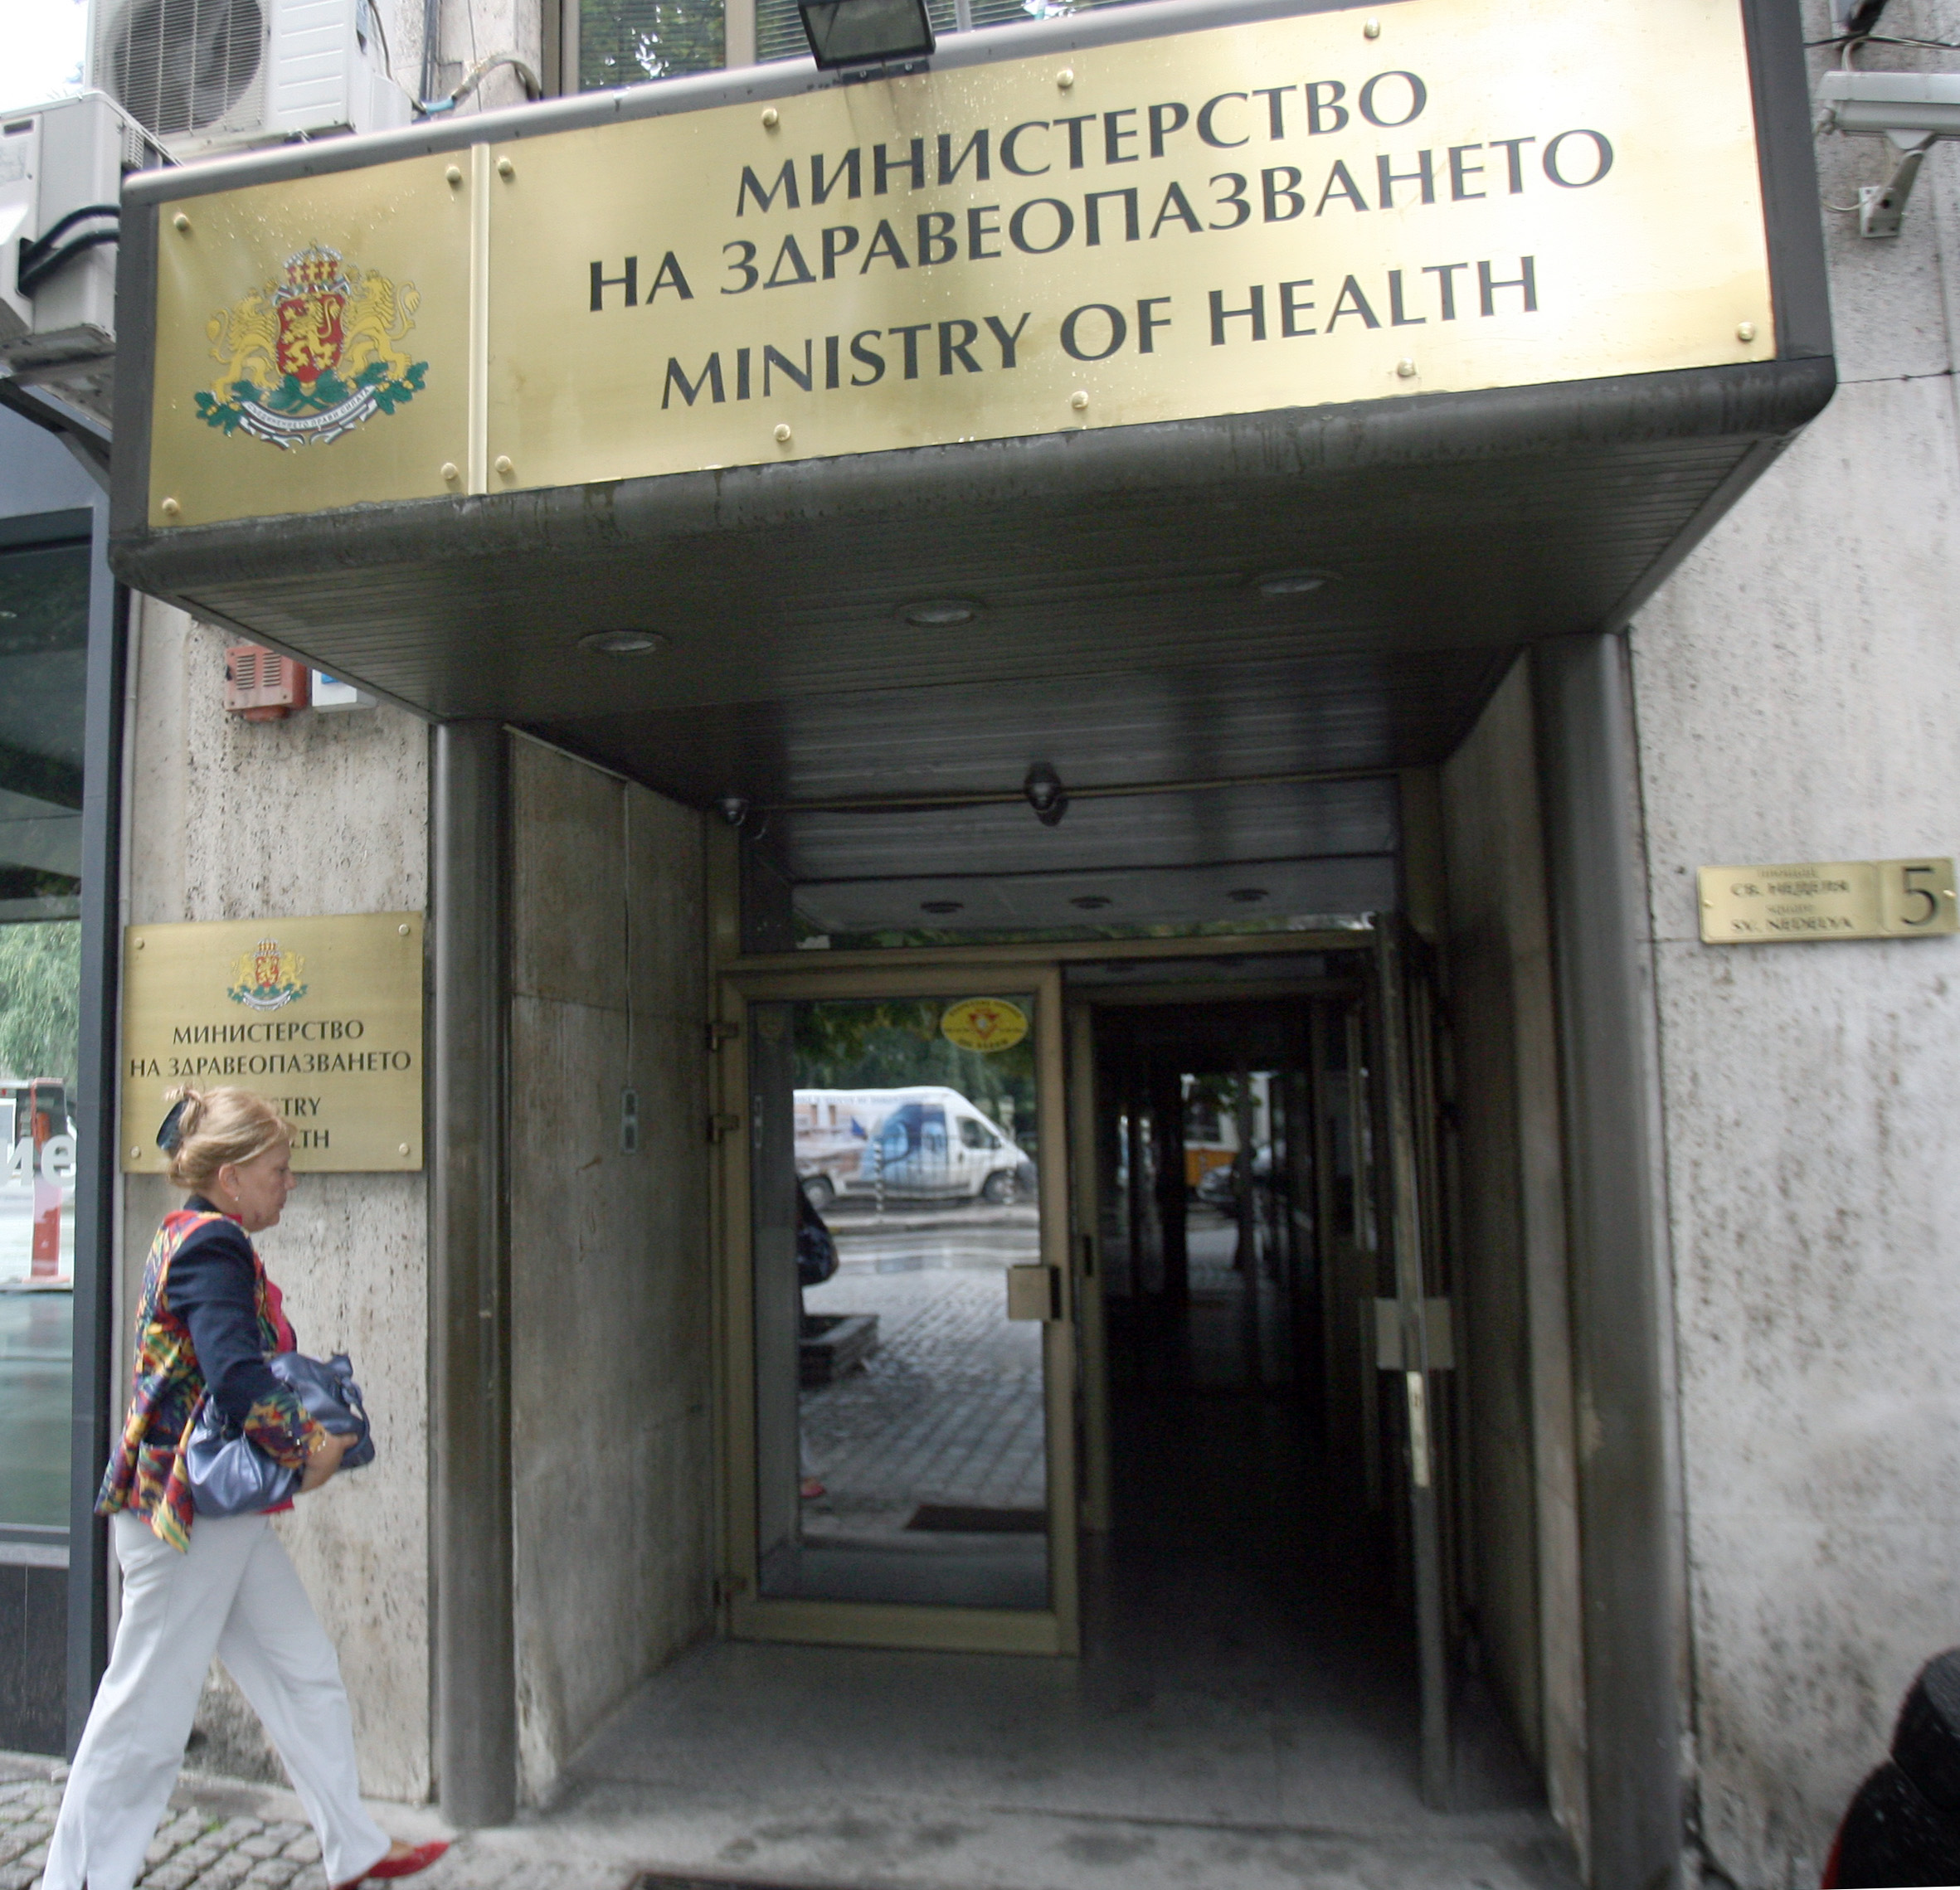 Днес докладът по случая ще бъде изпратен в Министерство на здравеопазването